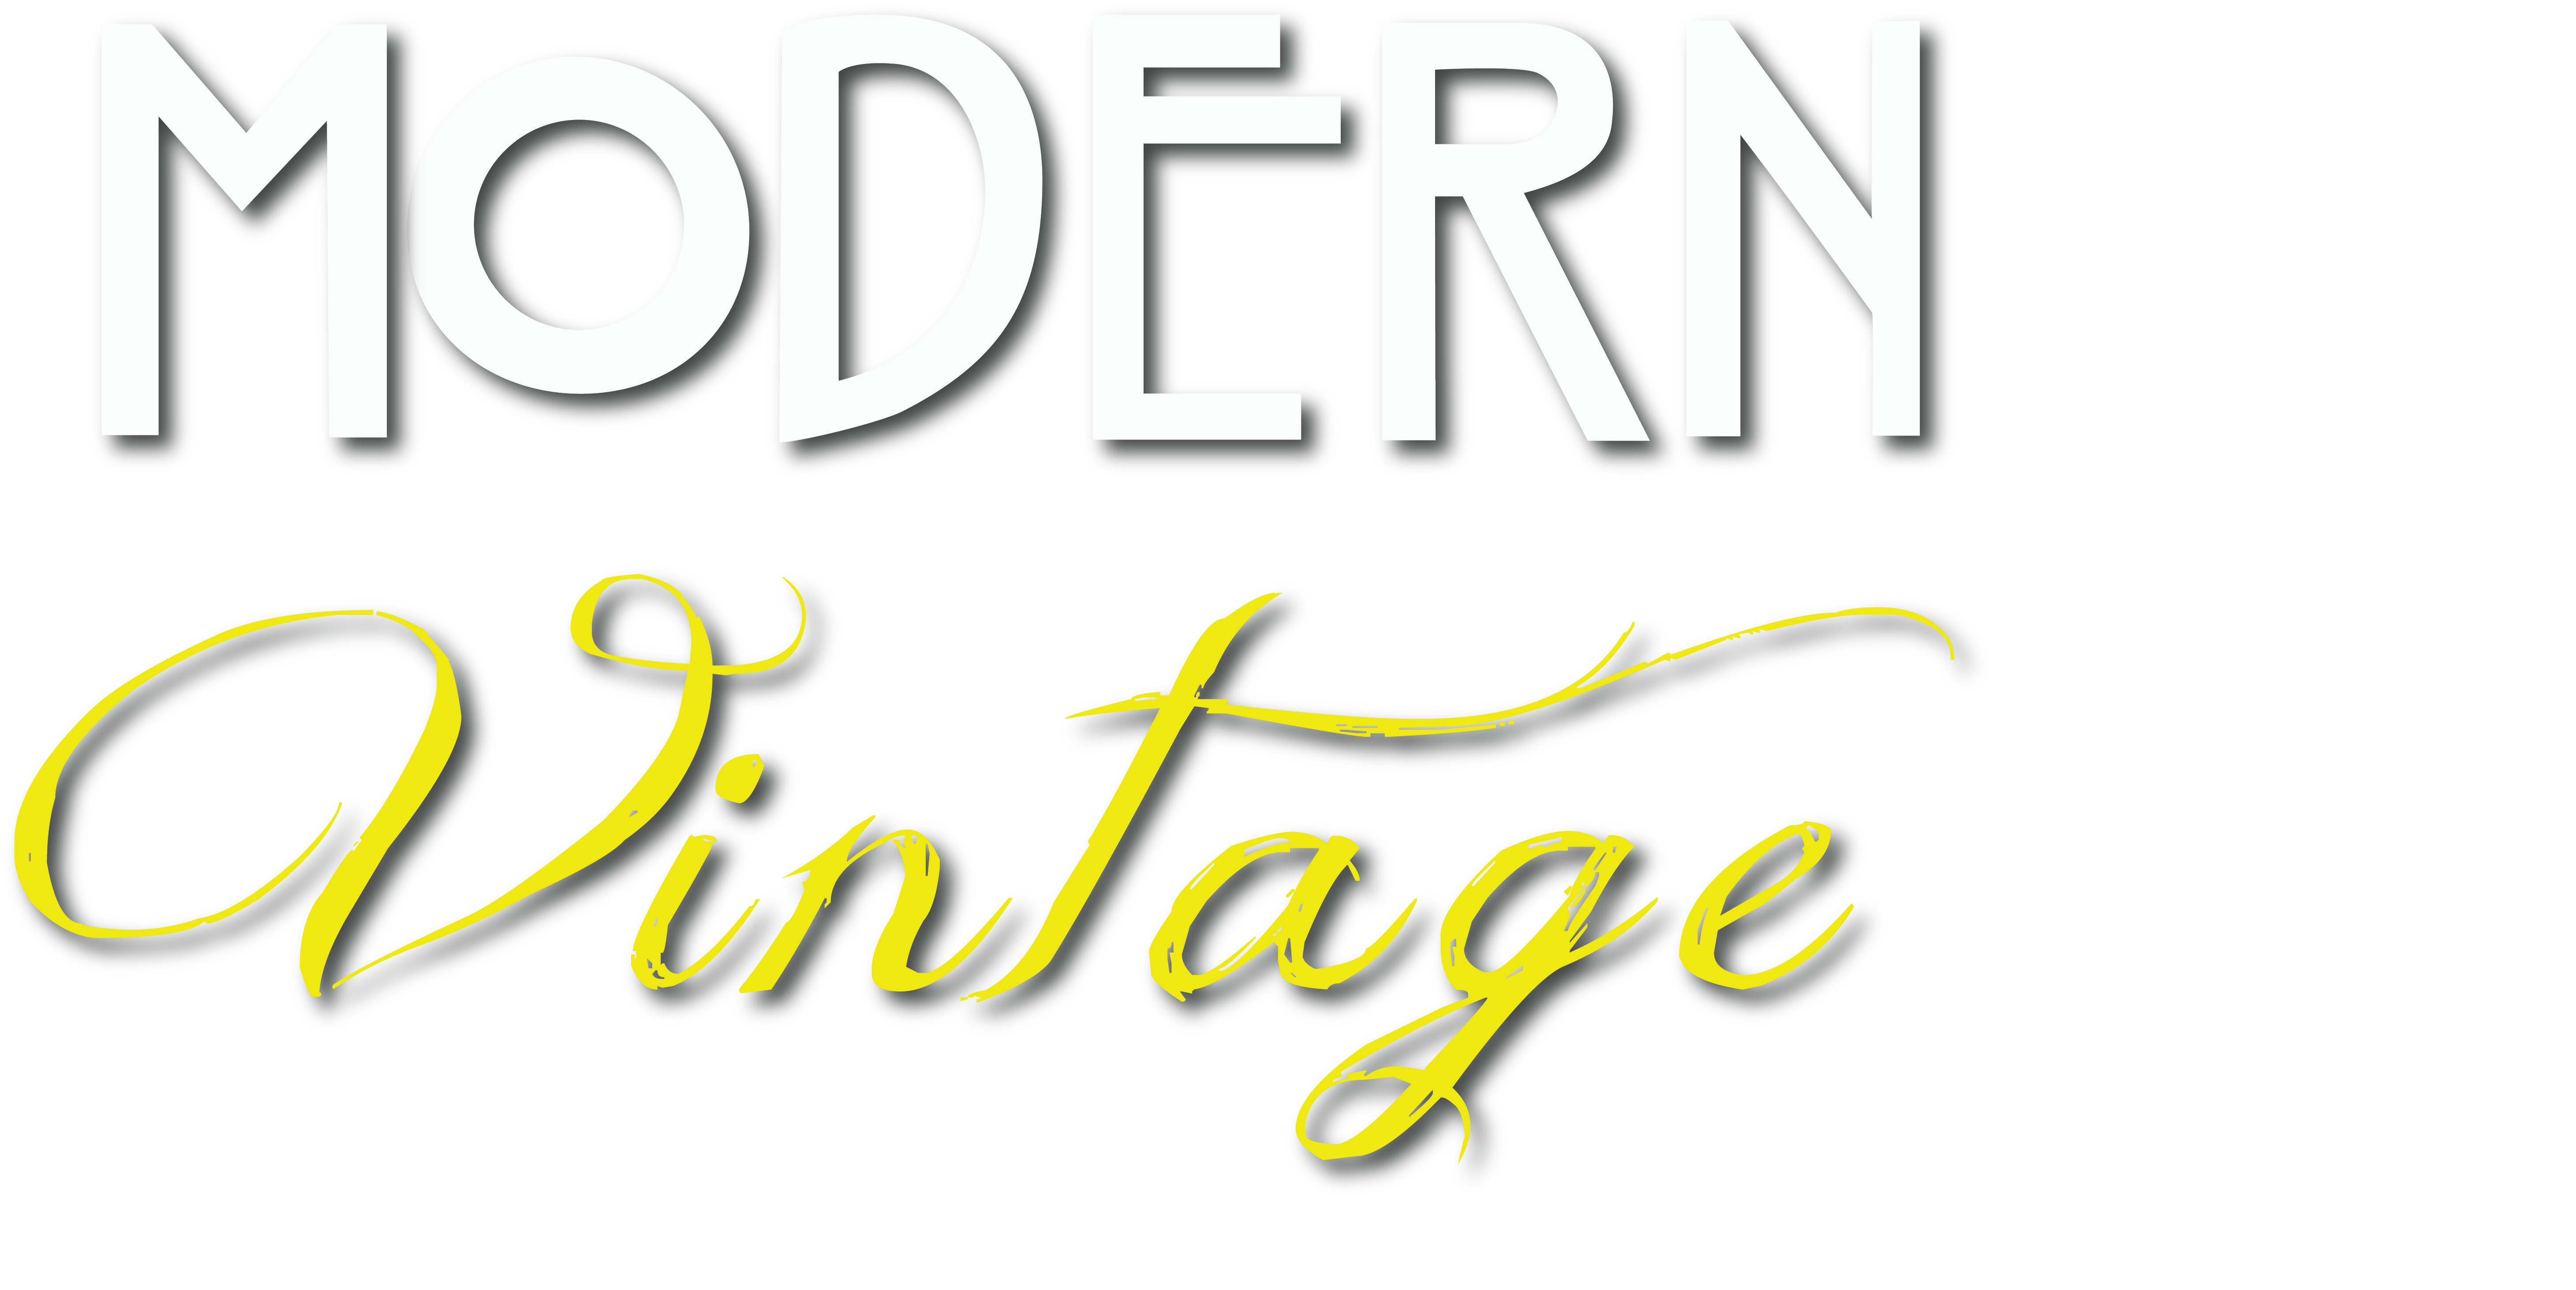 Modern Vintage<br>